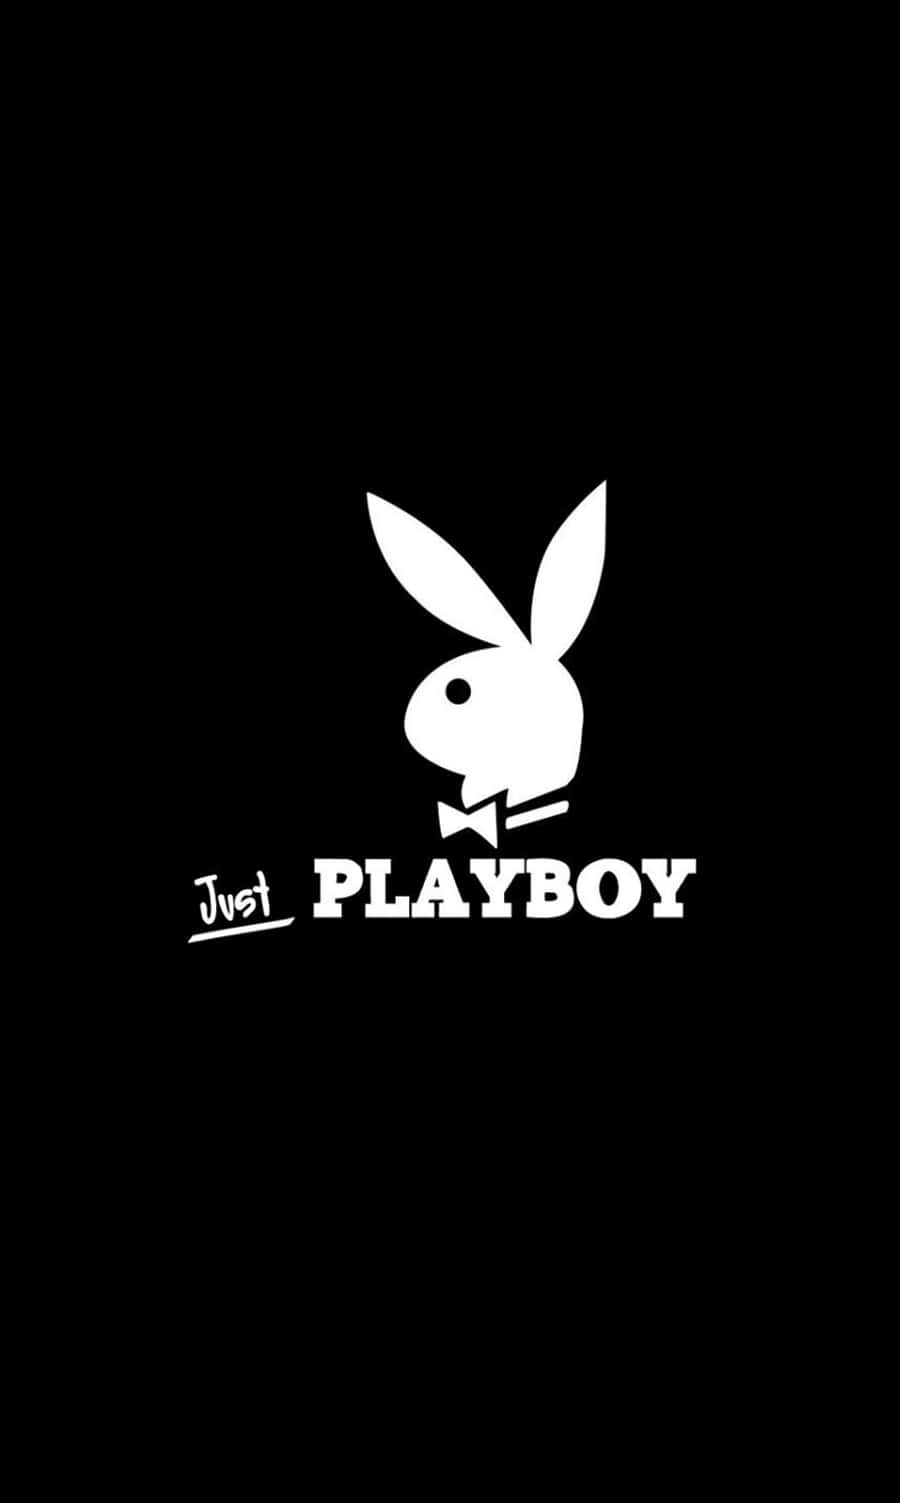 Ellogotipo De Playboy Sobre Un Fondo Negro. Fondo de pantalla